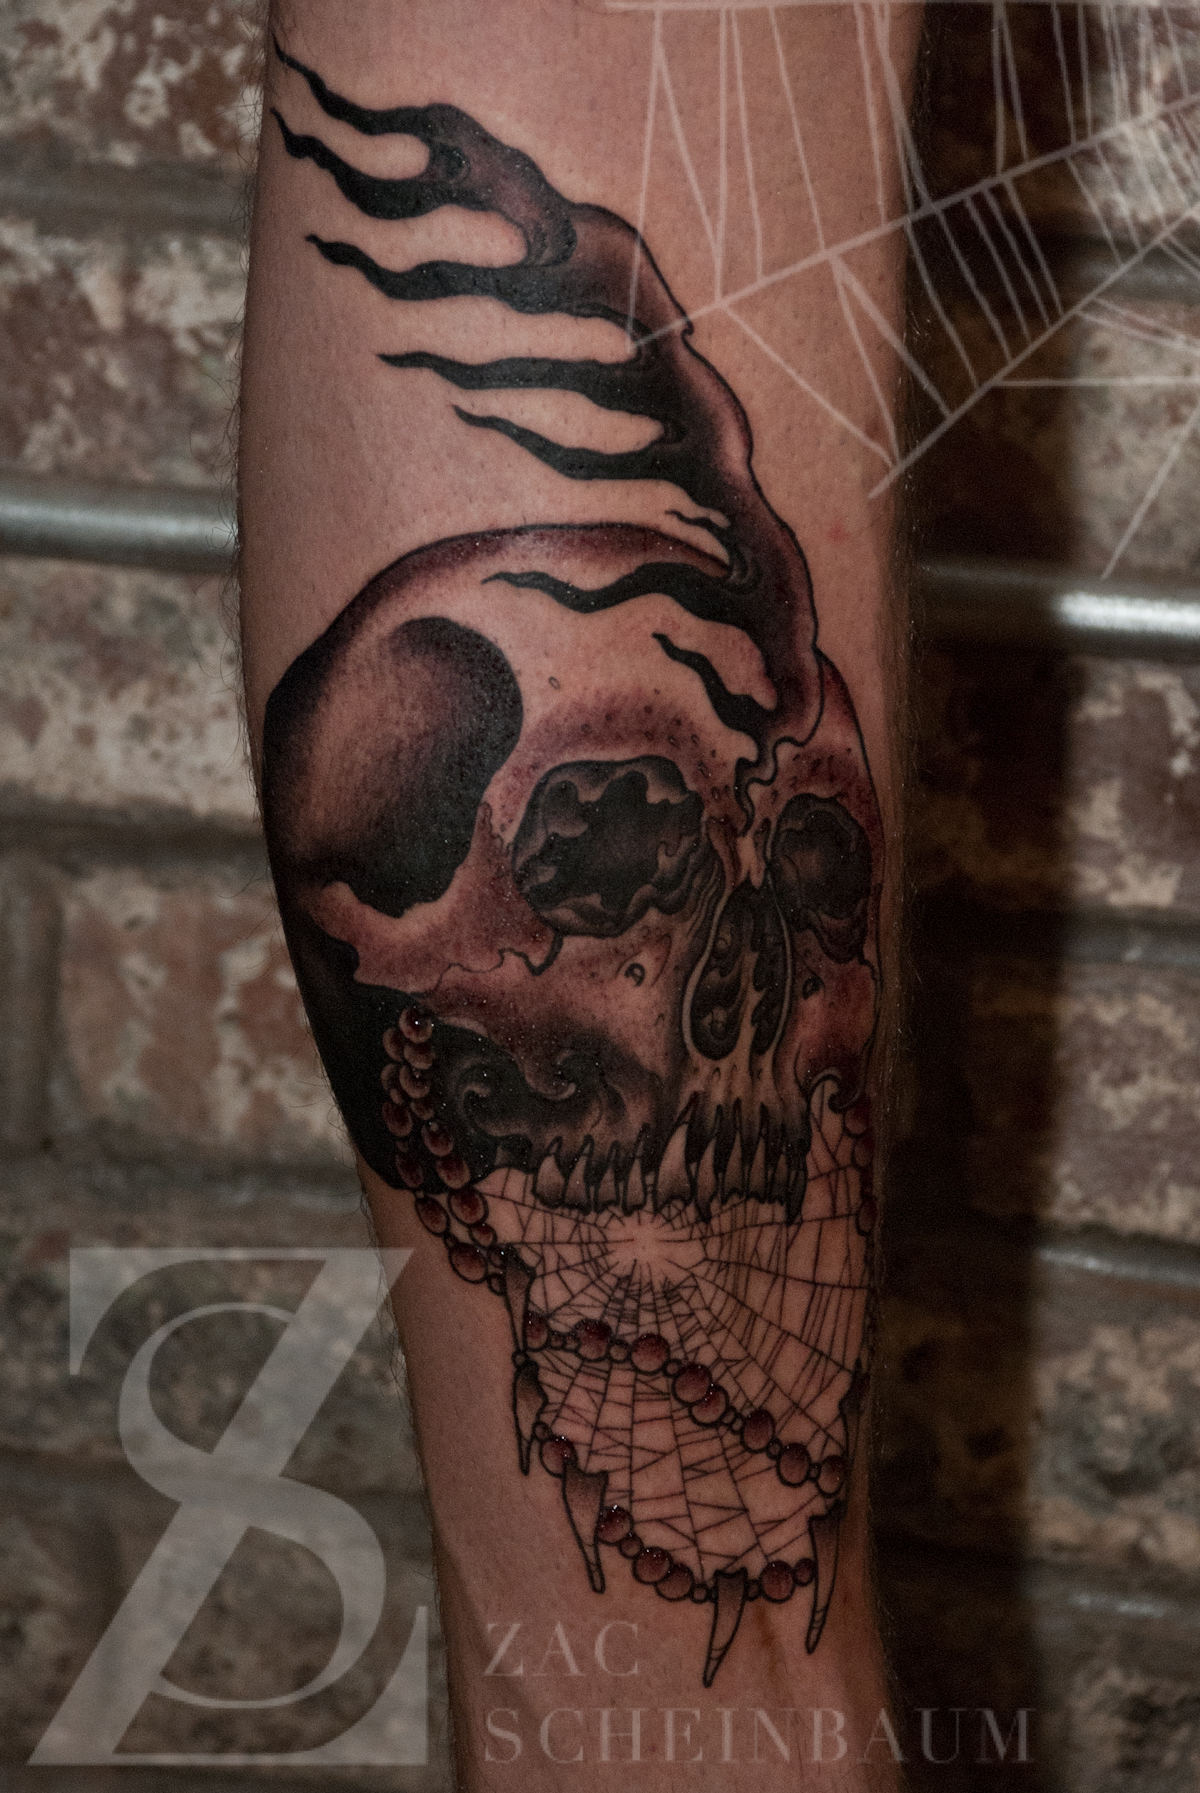 Tattoo uploaded by Levgen • flaming skull • Tattoodo